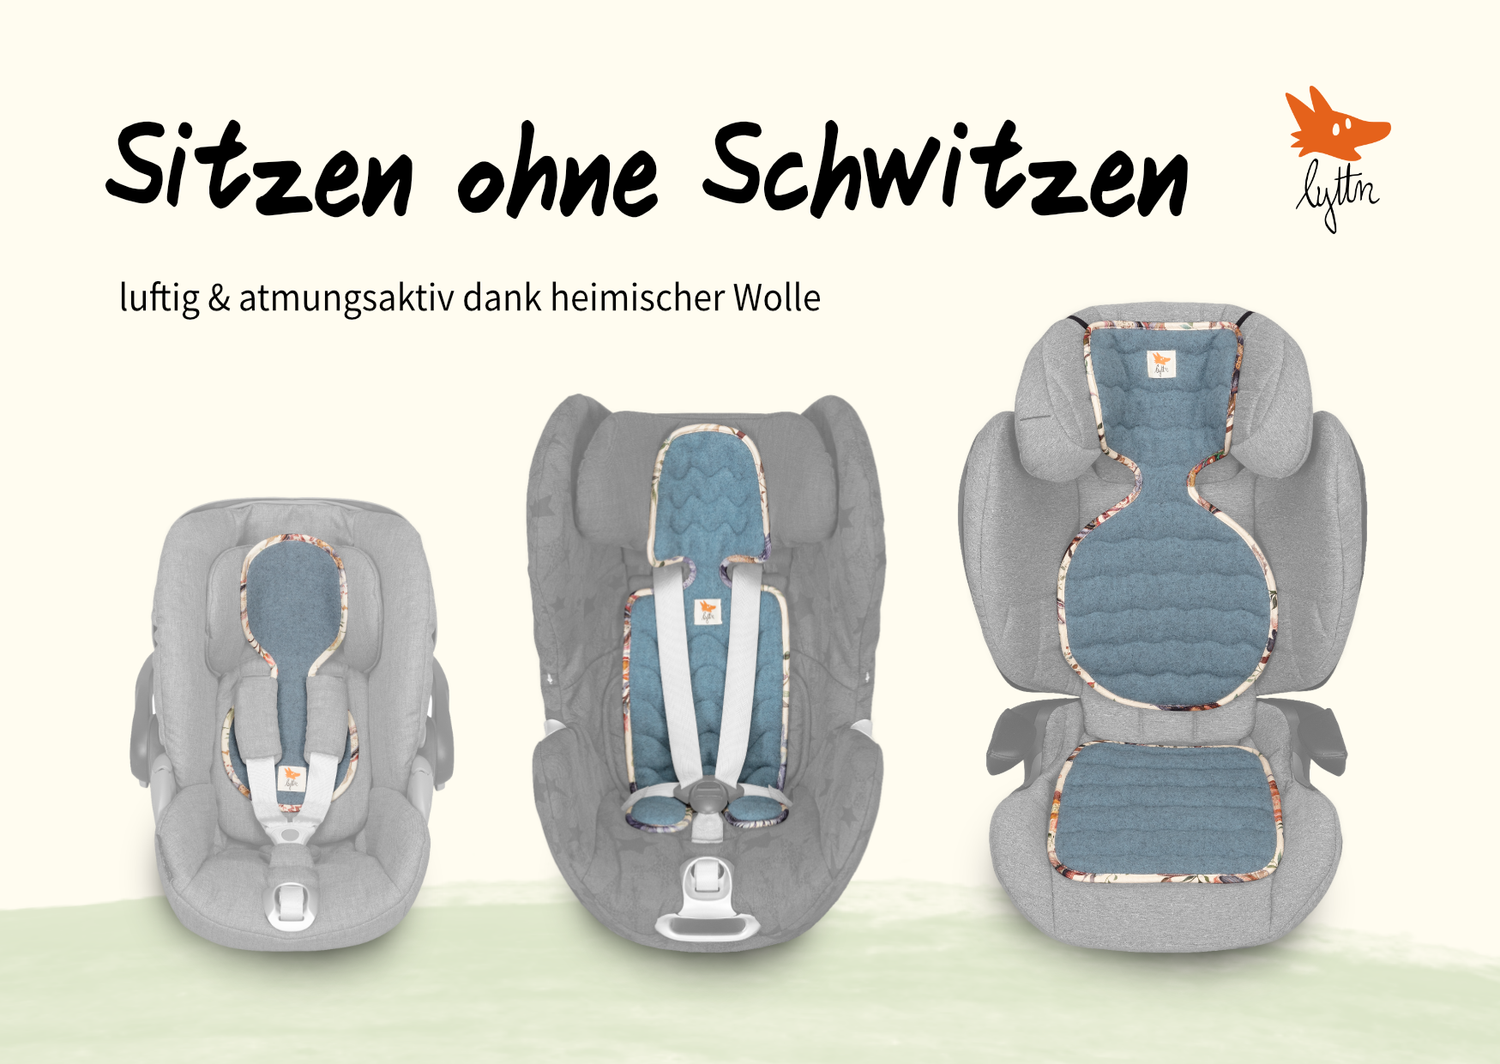 drei Kindersitze in verschiedenen Größen mit passenden Sitzauflage von lyttn aus heimischer Wolle für ein Sitzen ohne Schwitzen